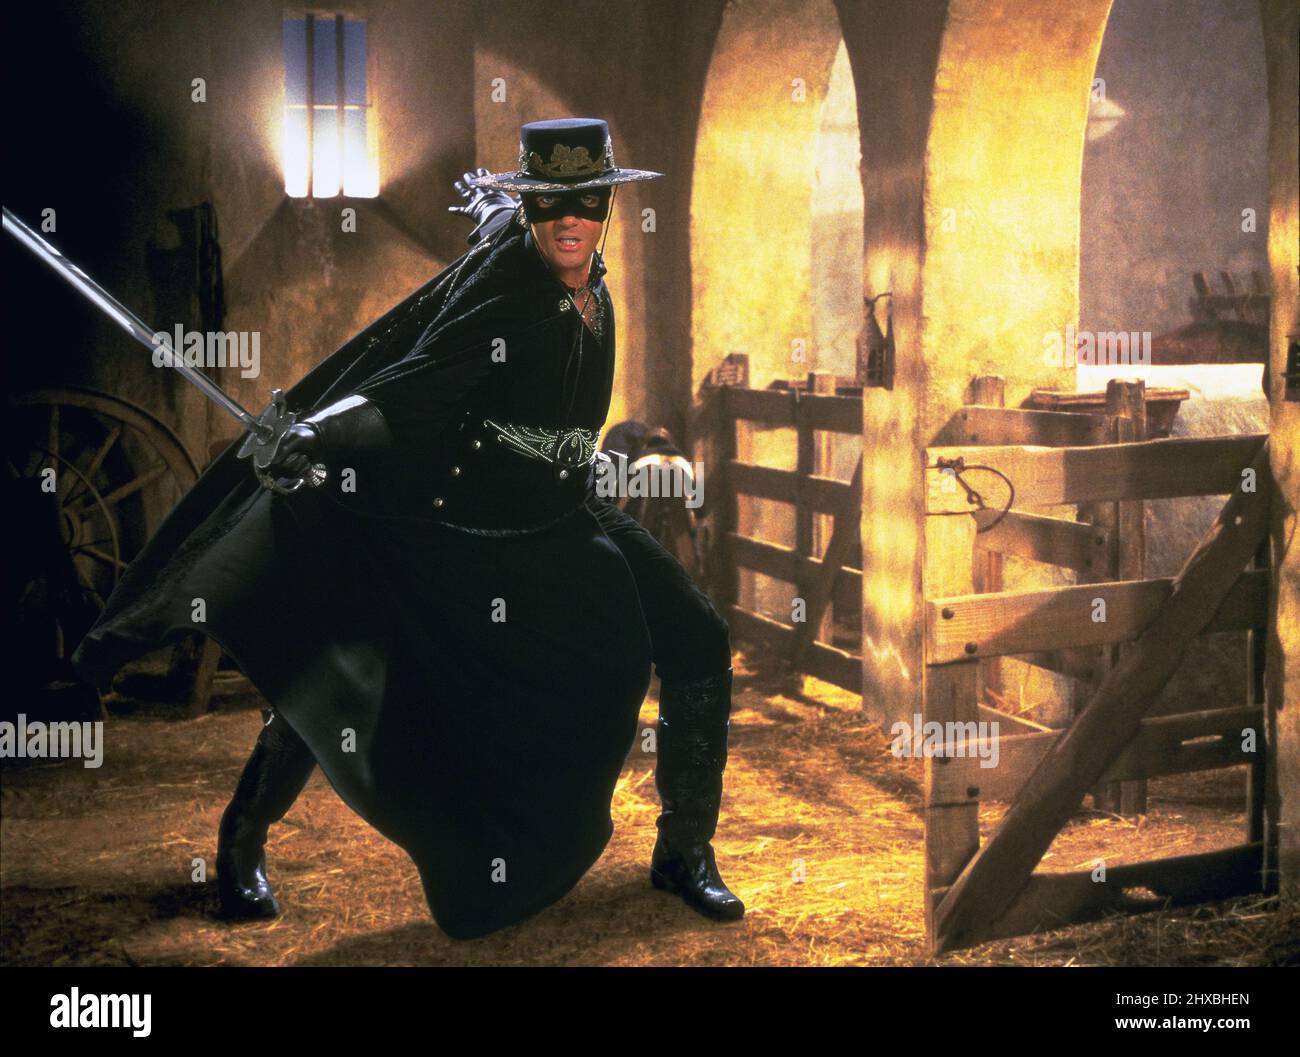 ANTONIO BANDERAS dans le masque de Zorro (1998), réalisé par Martin Campbell. Credit : Amblin Entertainment / Album Banque D'Images